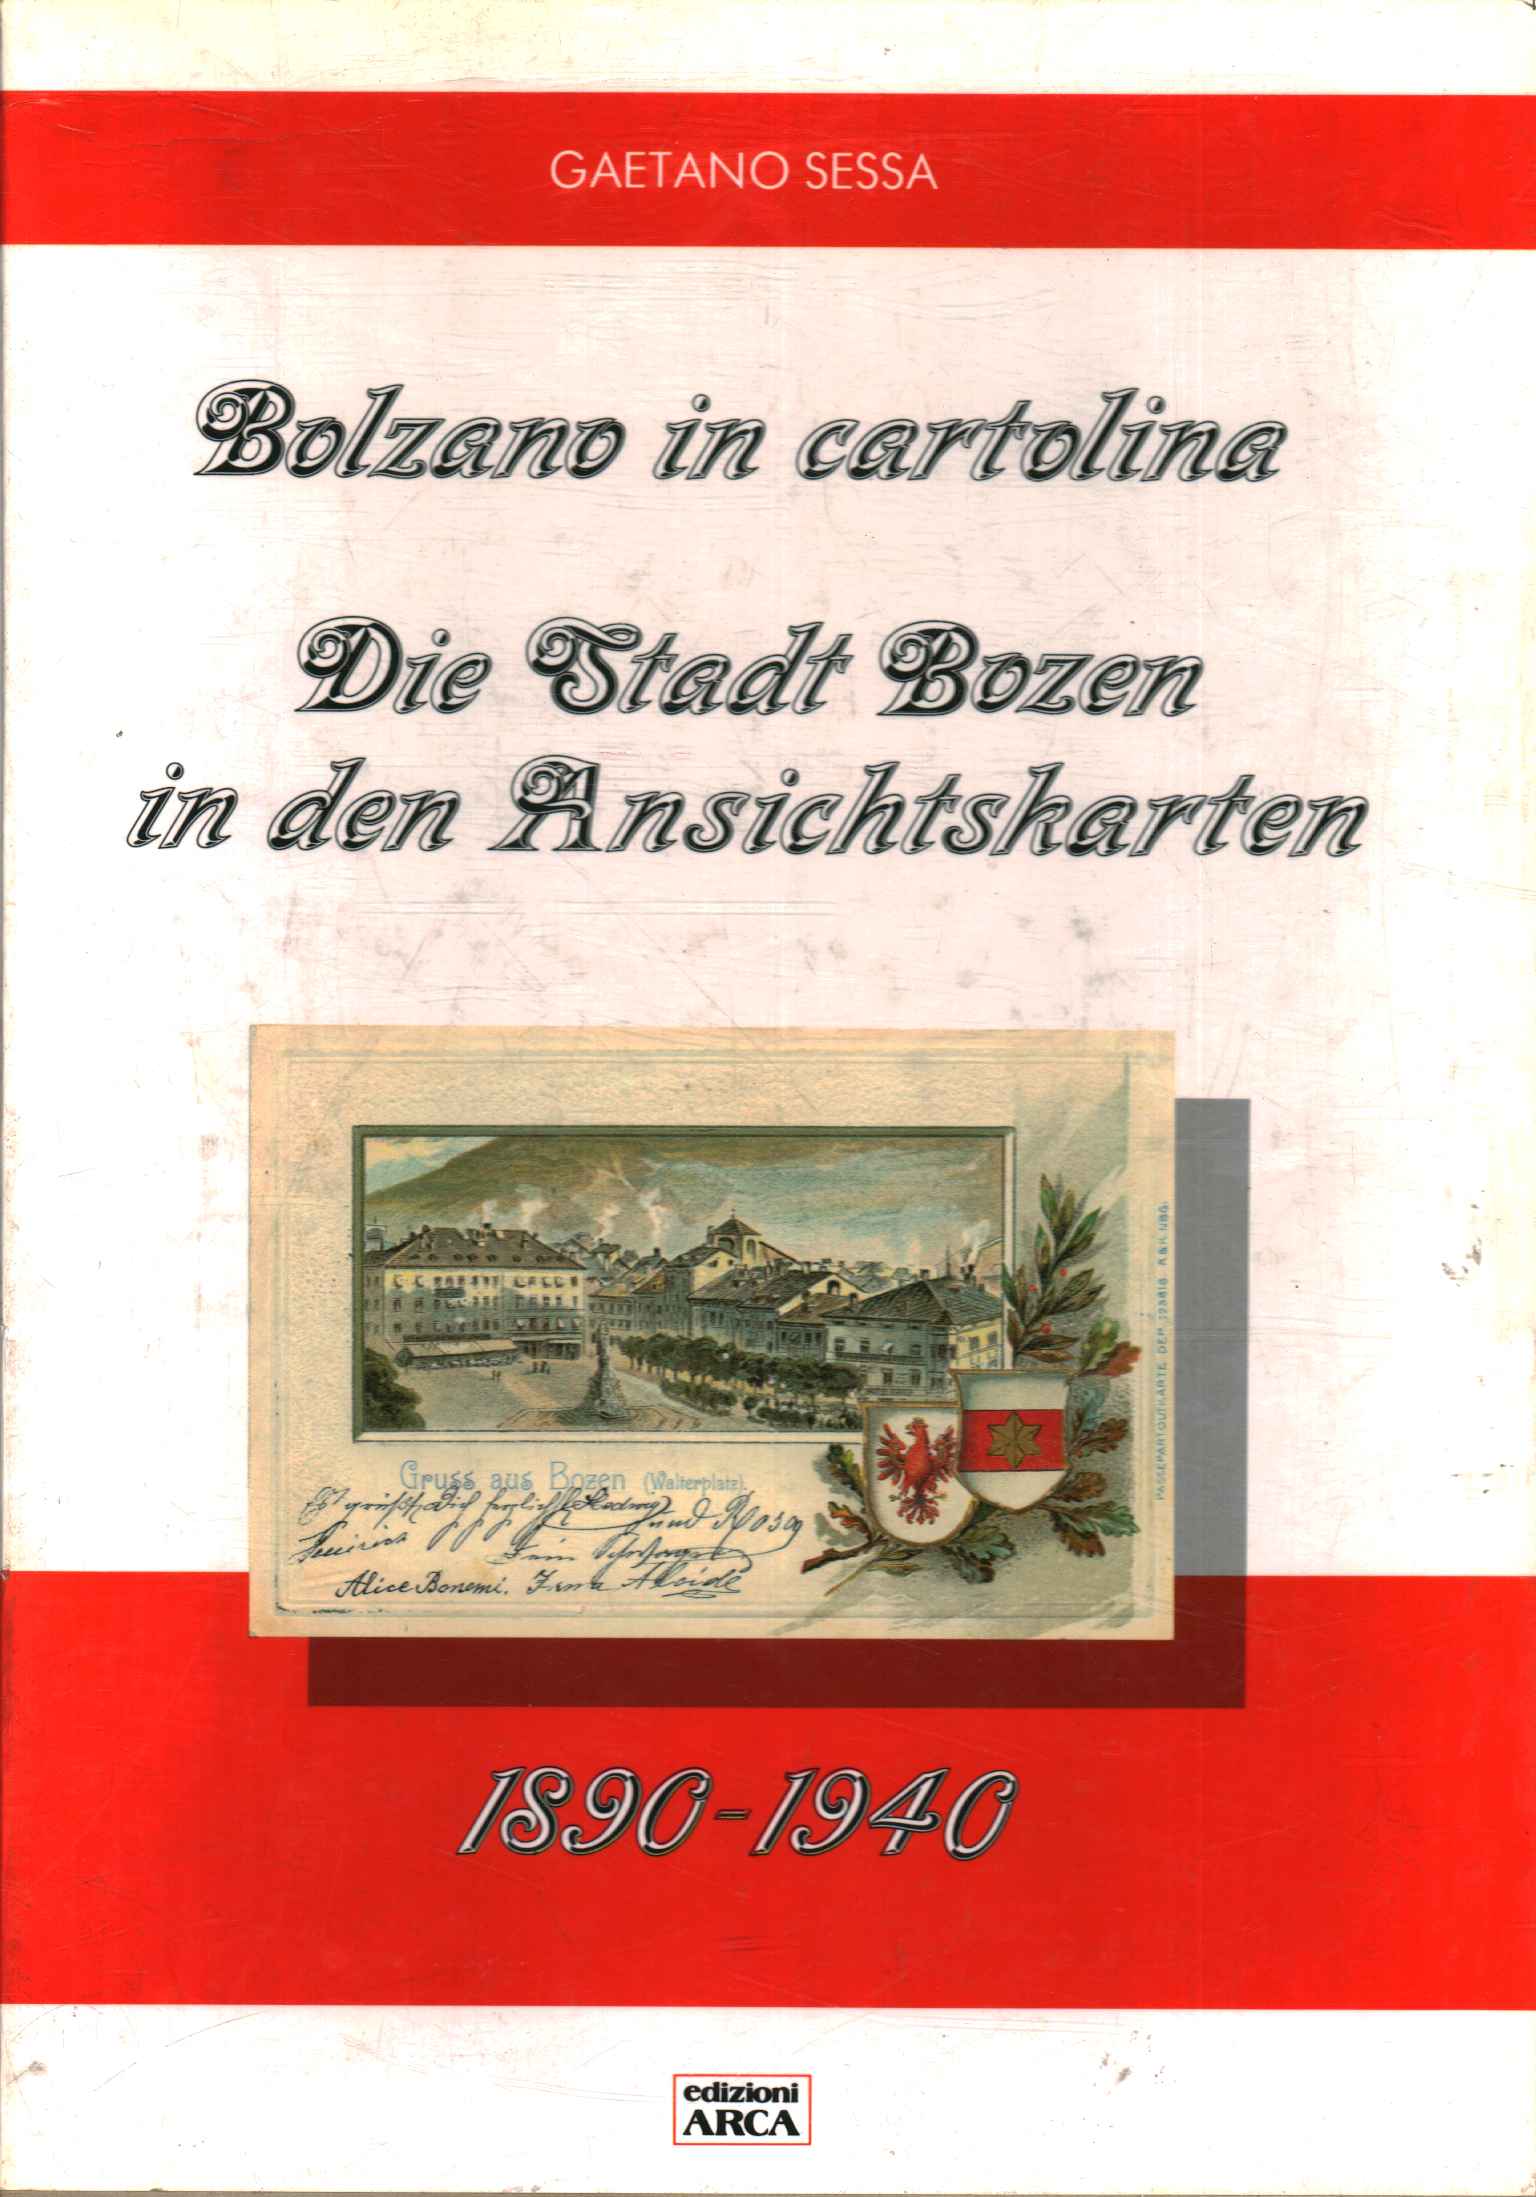 Bolzano en una postal. La ciudad de Bolzano